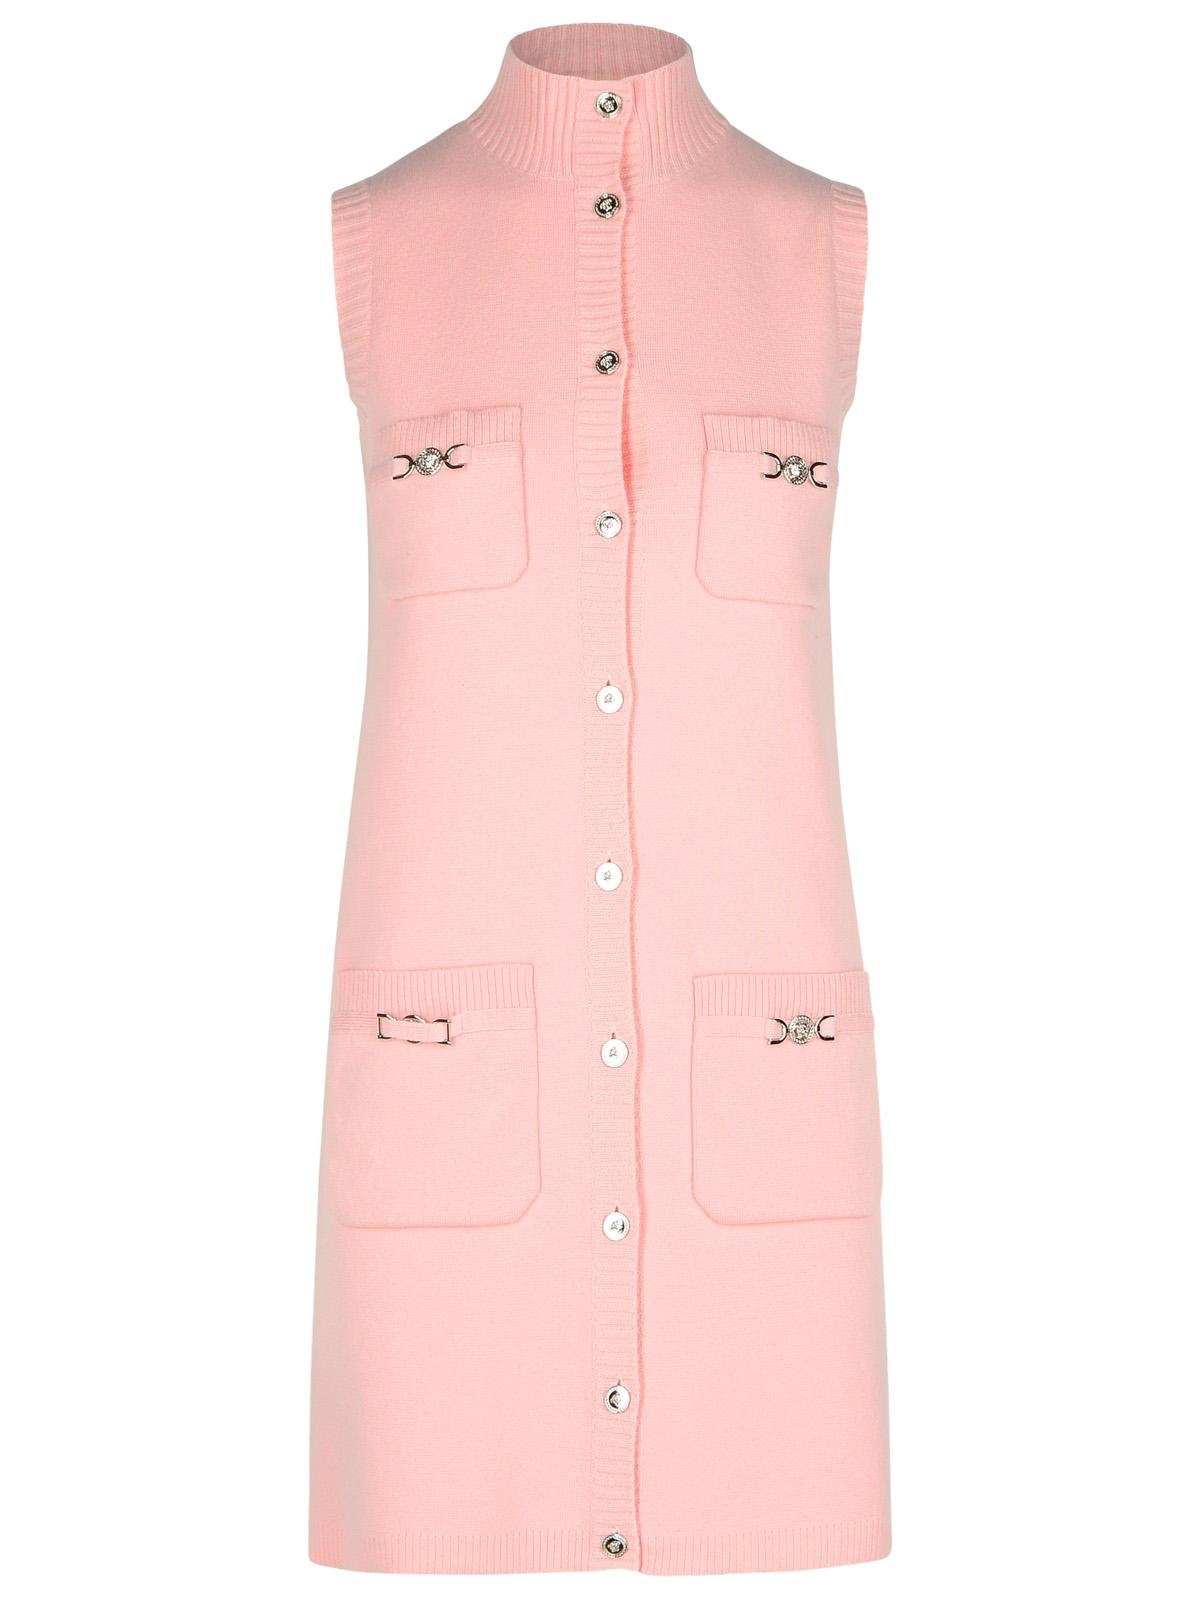 Versace Pink Wool Blend Dress Woman - 1